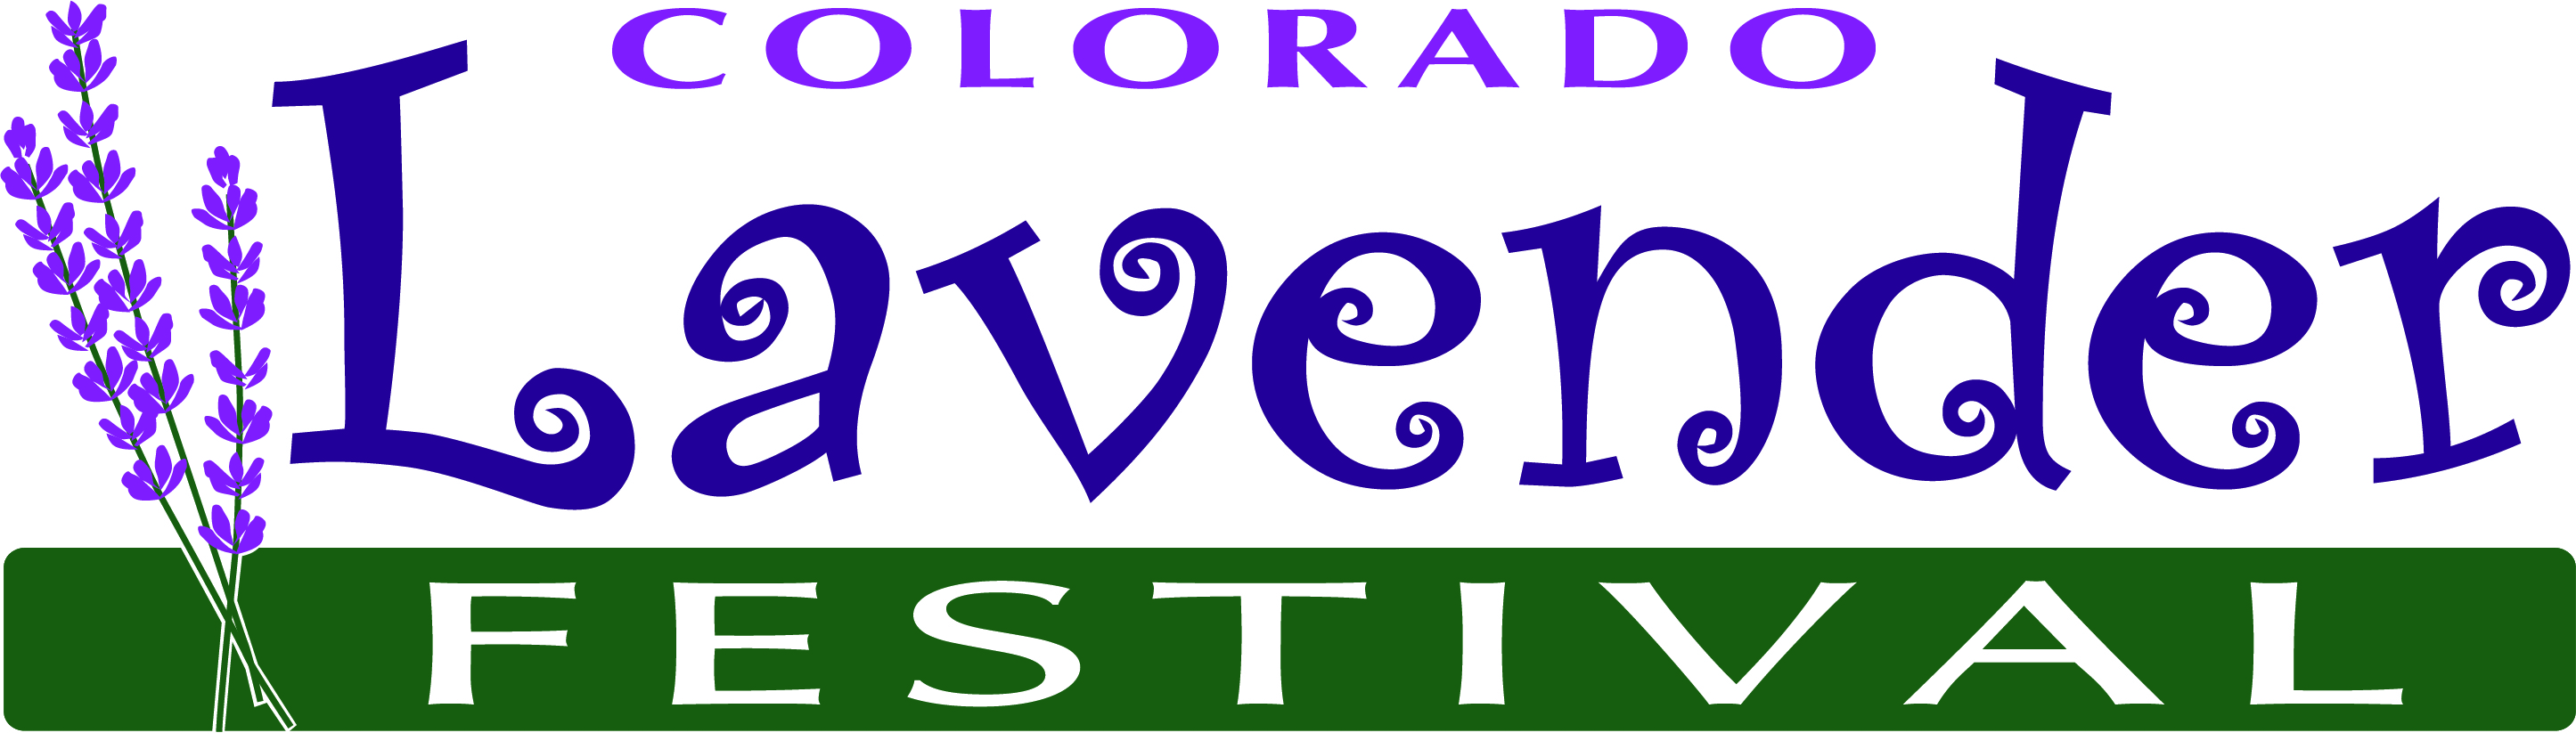 12th Annual Colorado Lavender Festival